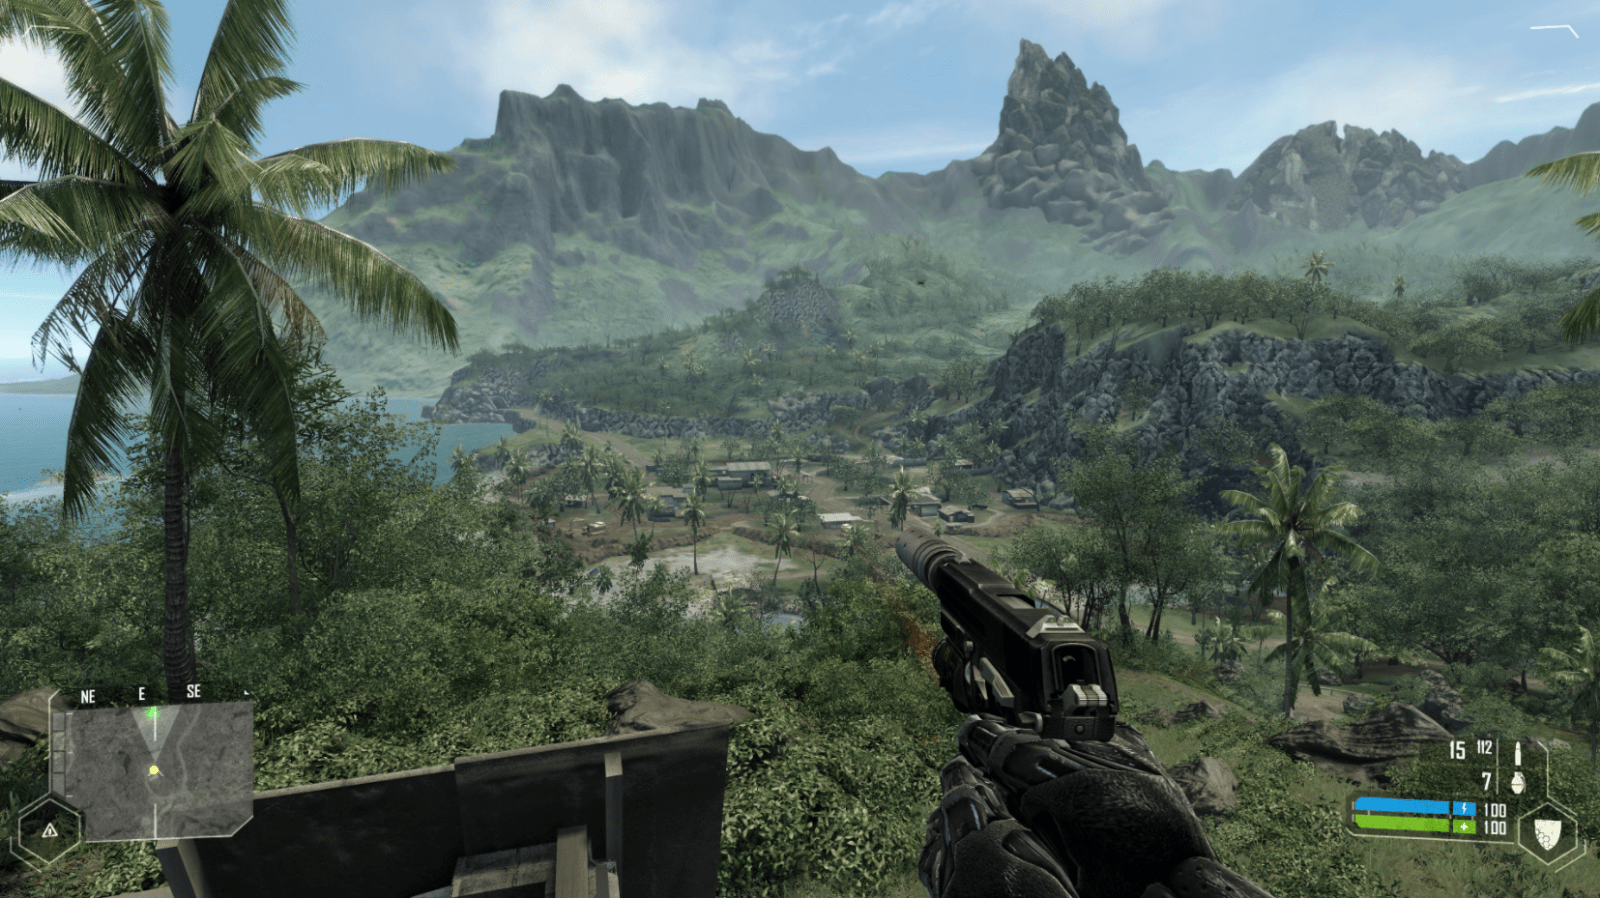 Beginilah Penampakan Crysis Remastered di Xbox One X Dengan Mode Ray Tracing